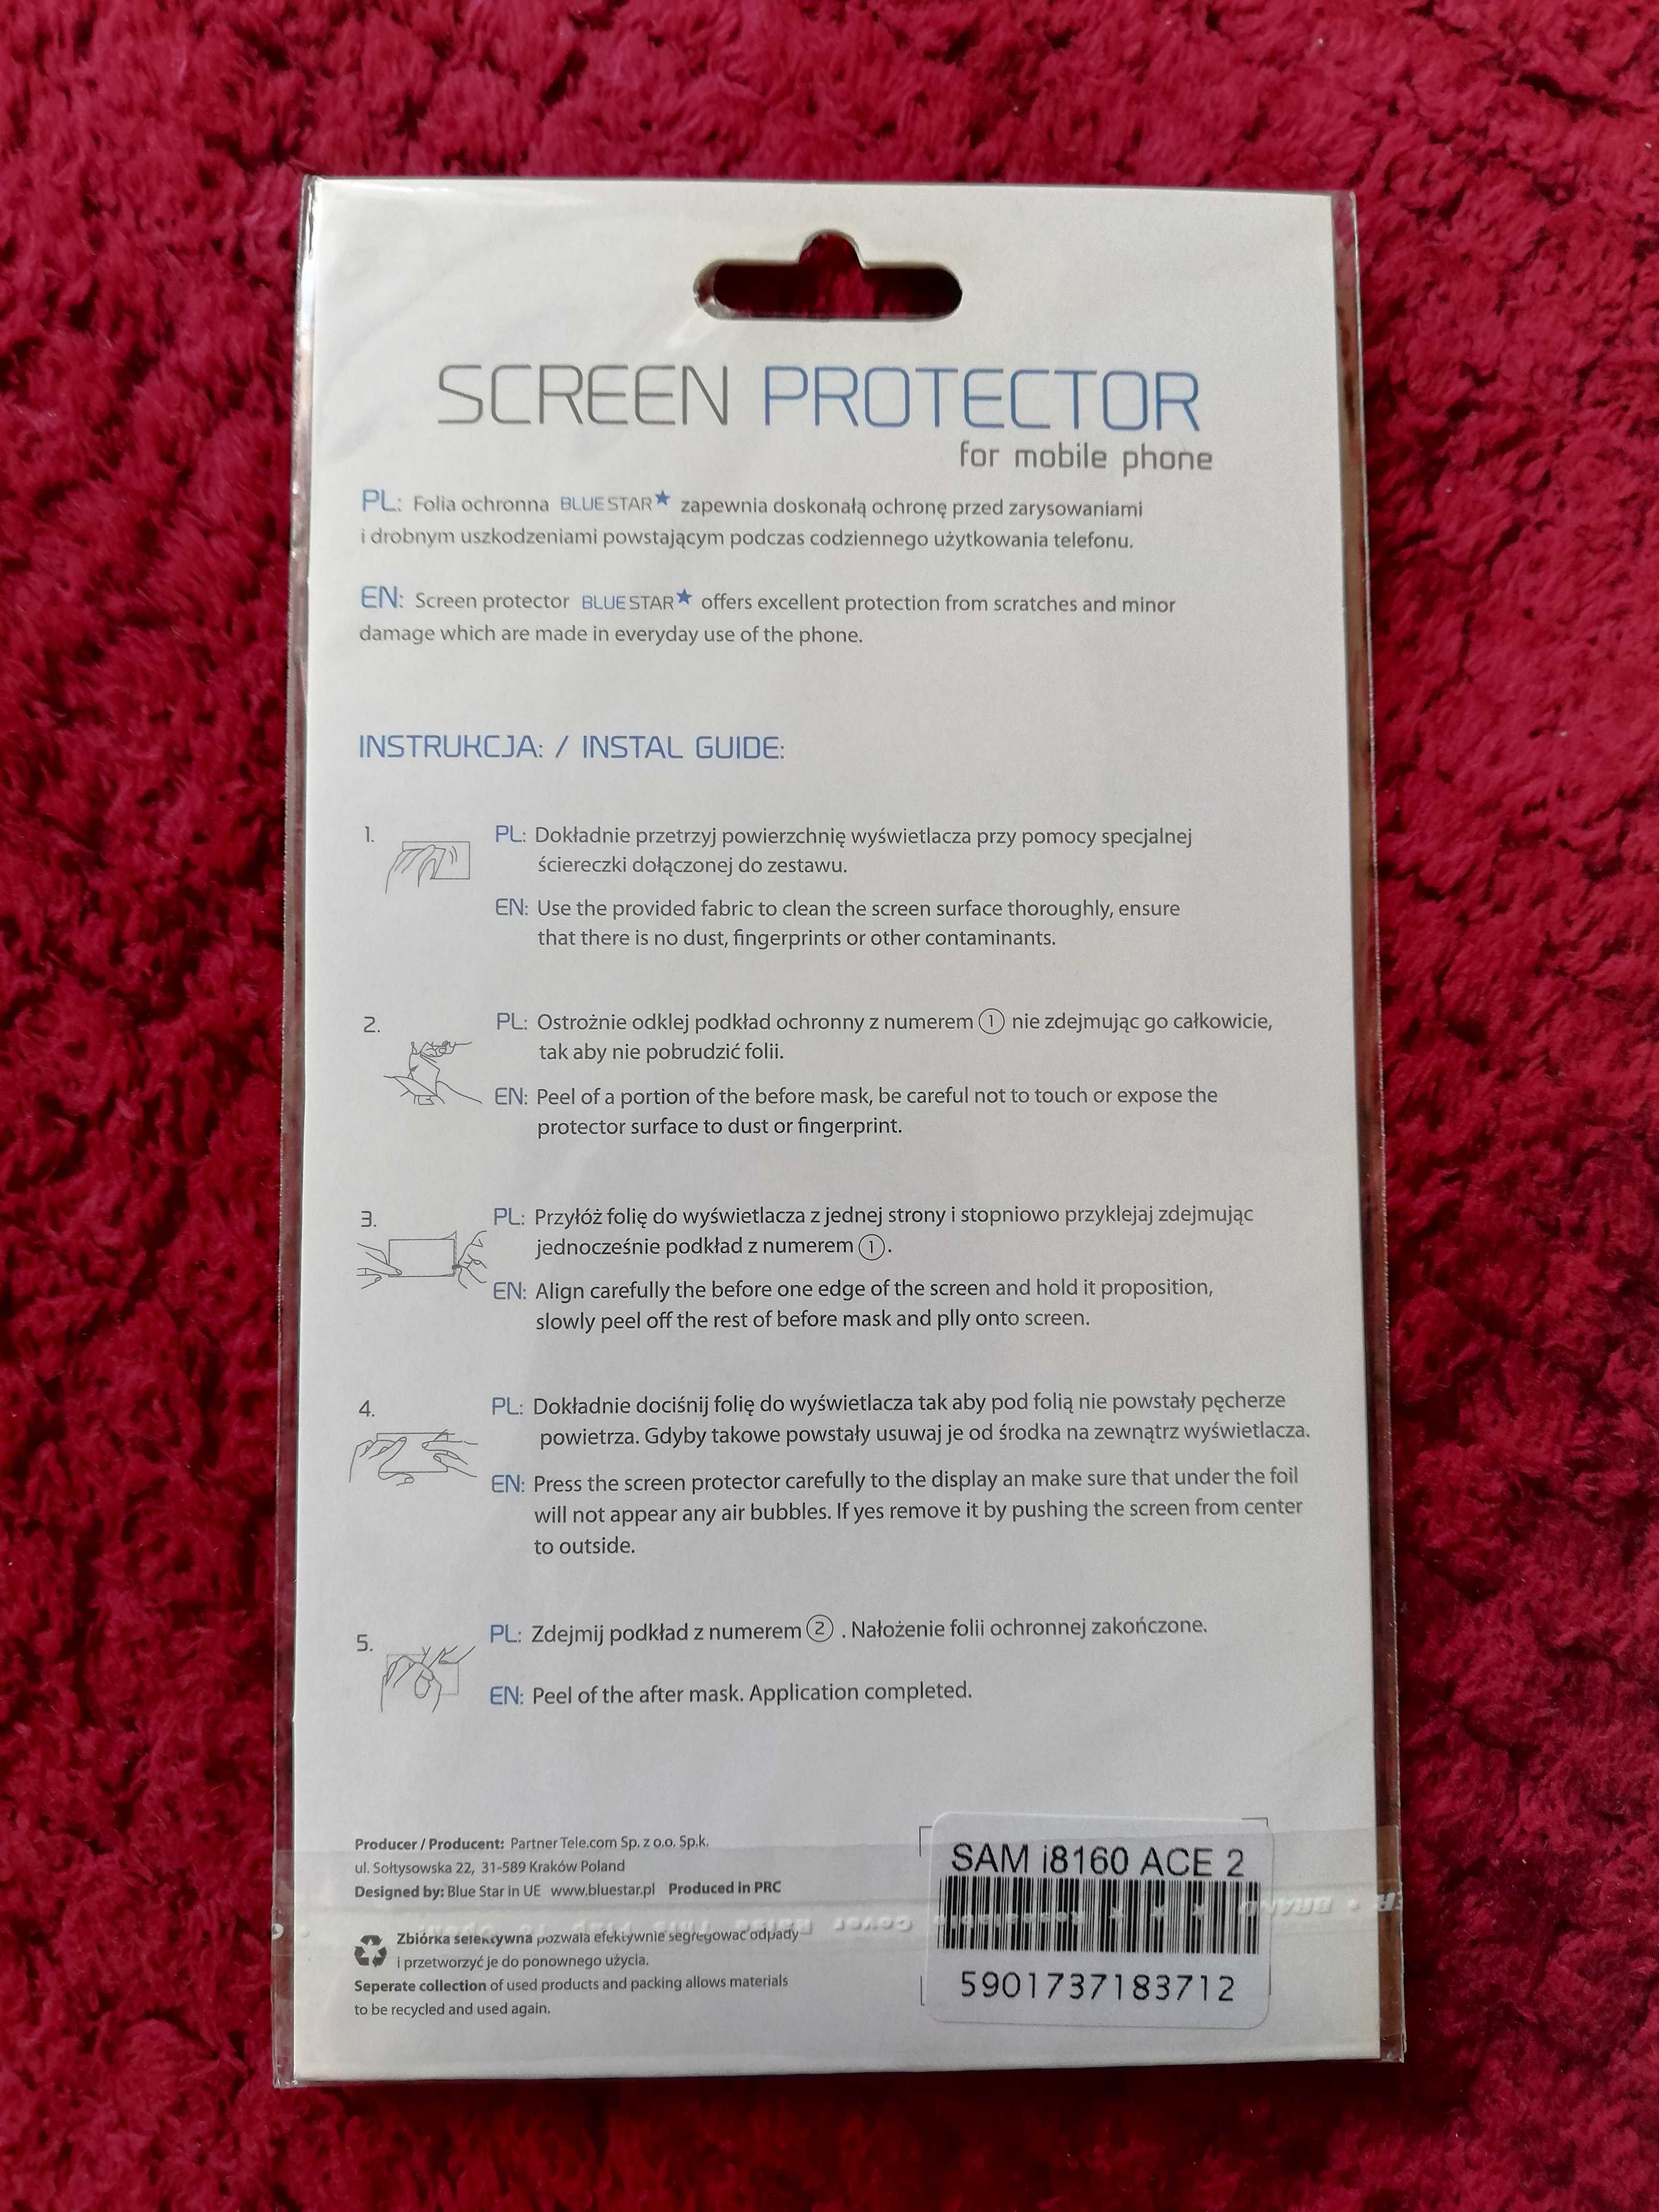 Folia ochronna szkło hartowane Samsung I8160 ACE 2